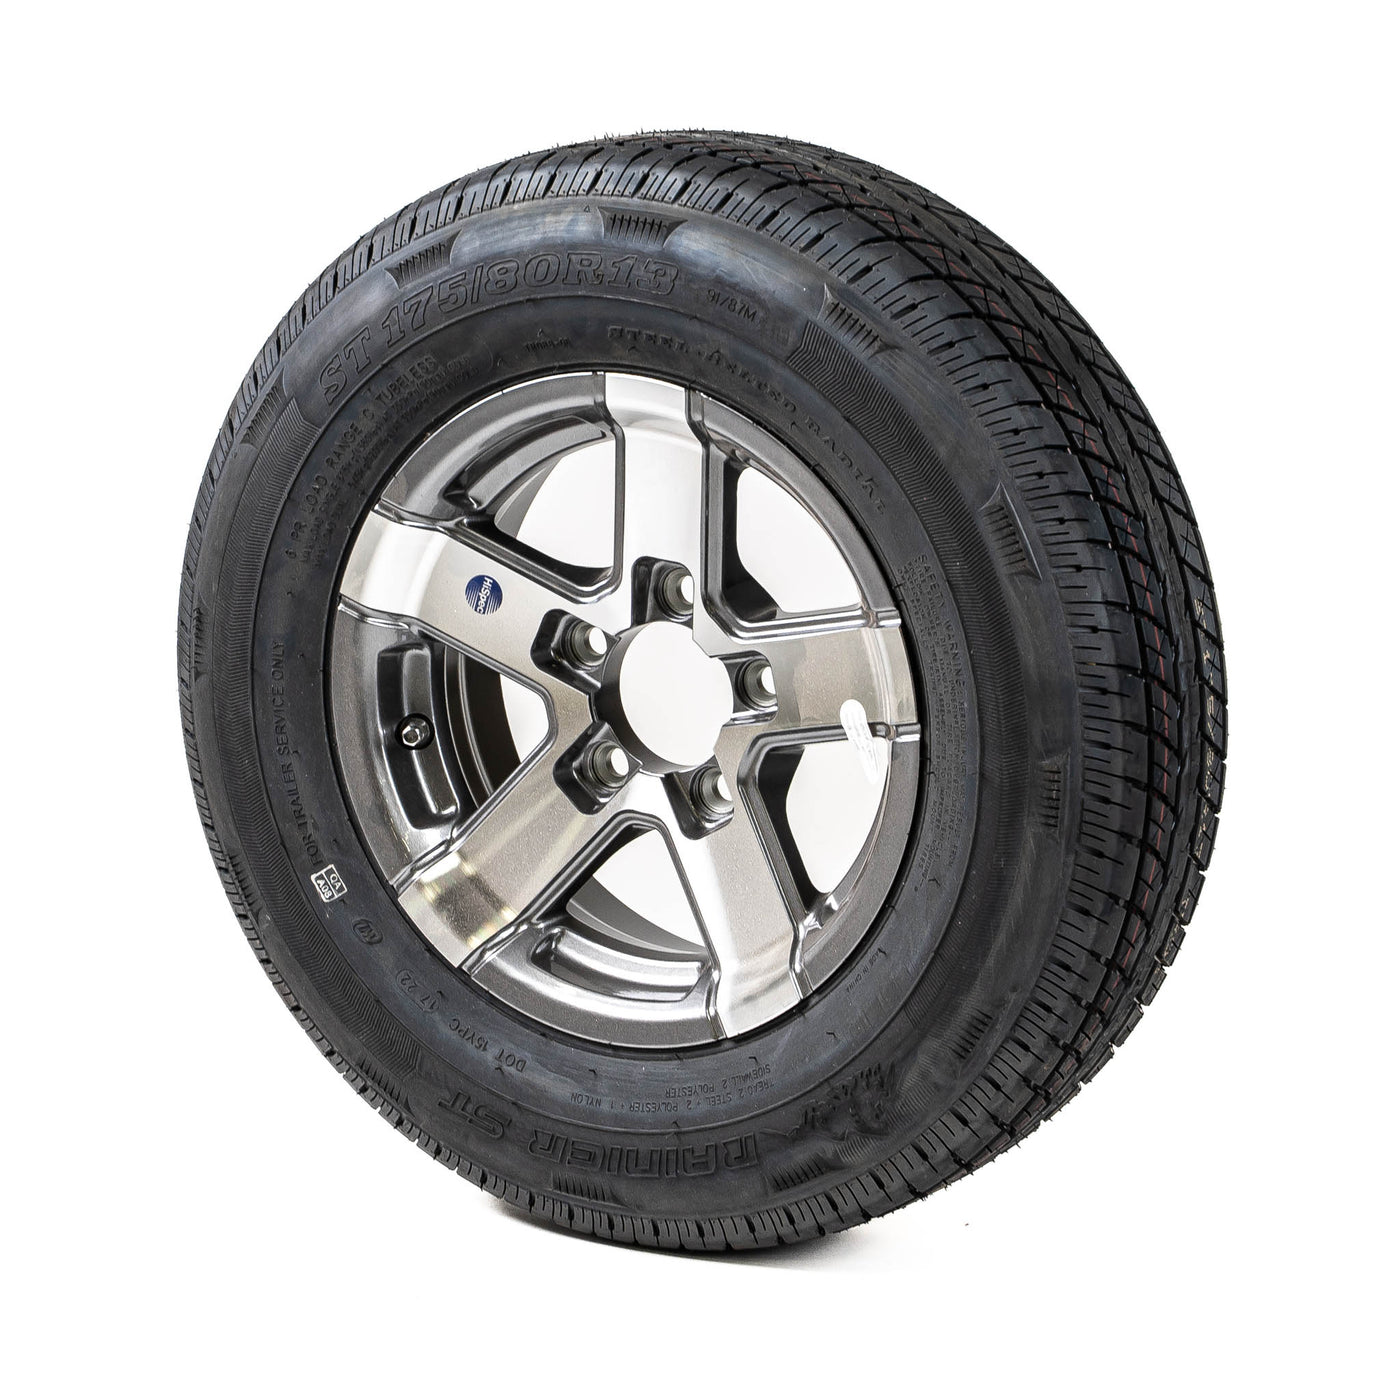 13″ Aluminum Rim and Radial Tire